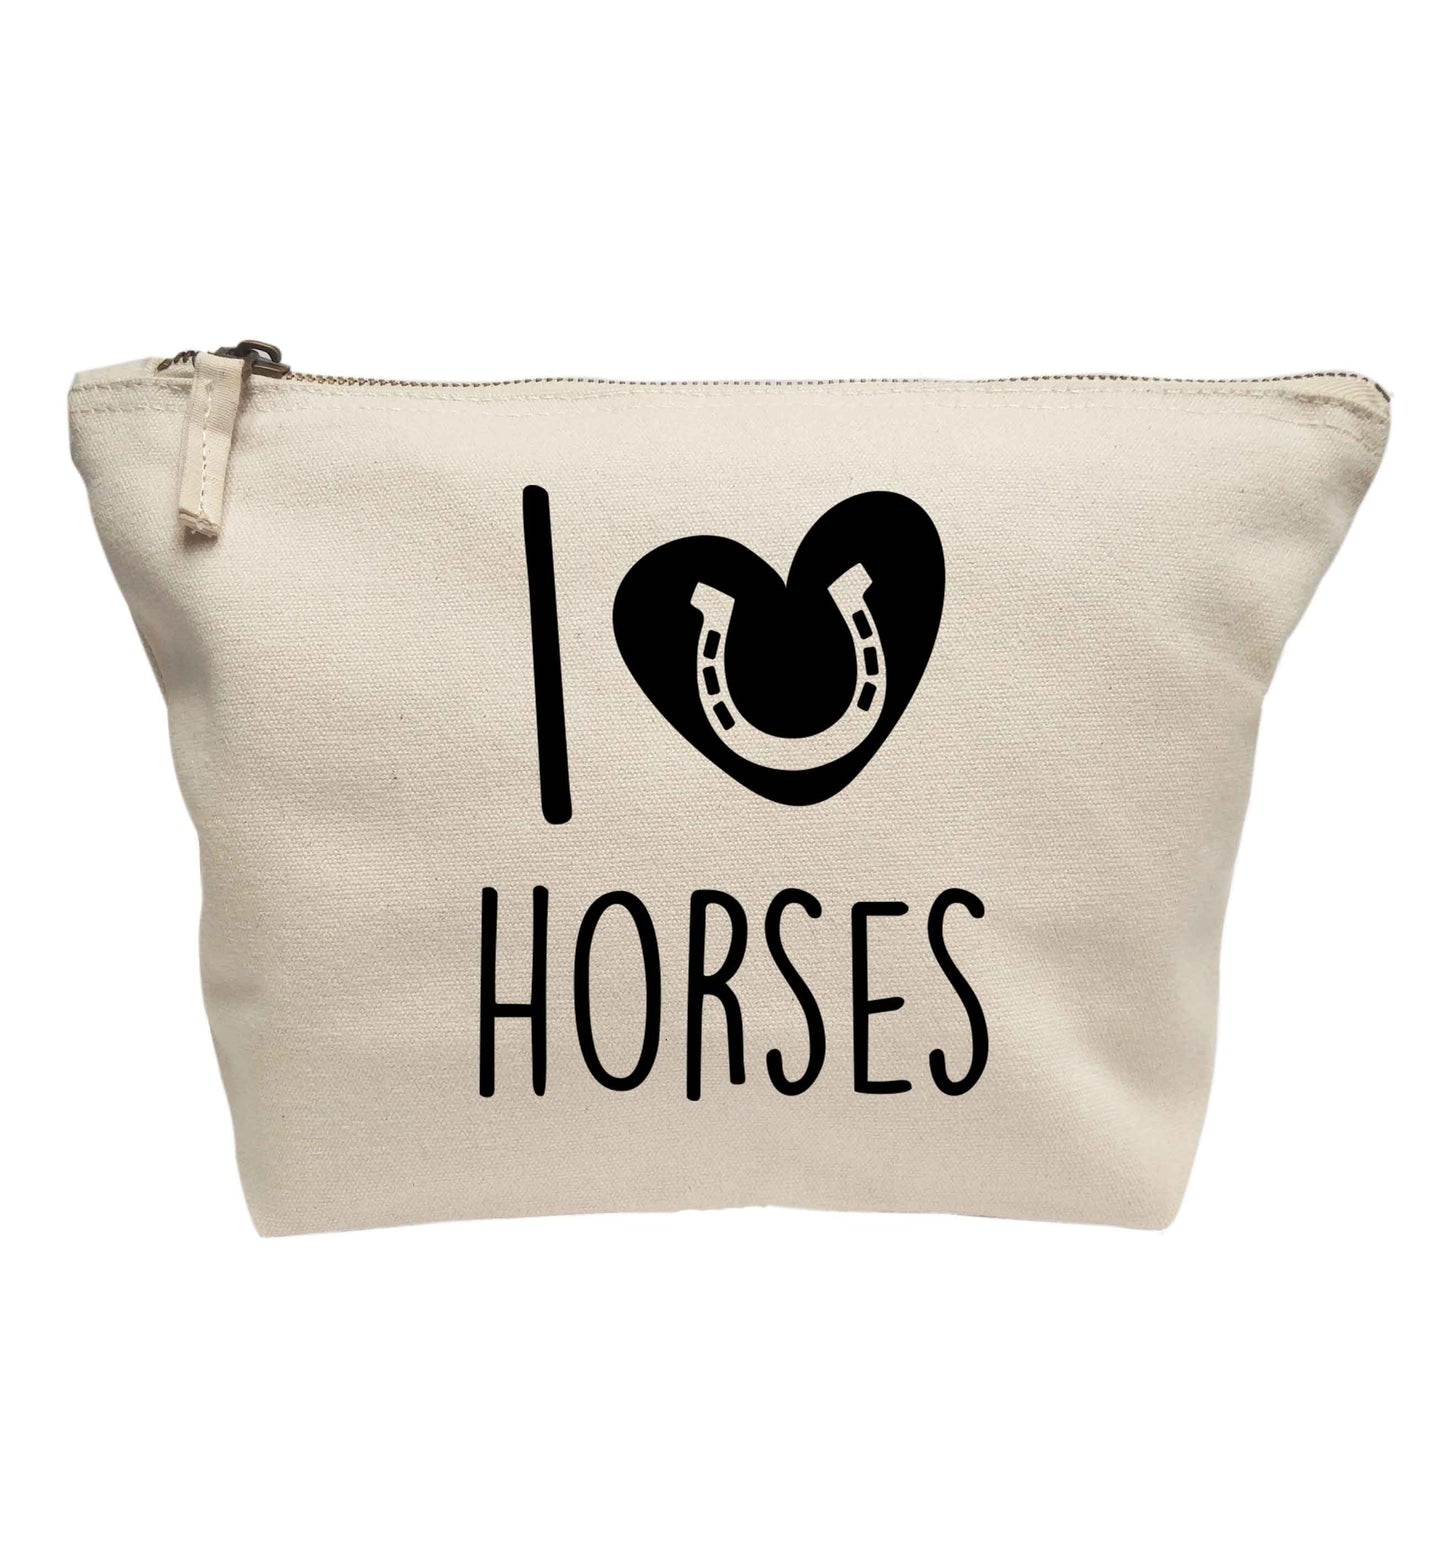 I love horses | Makeup / wash bag